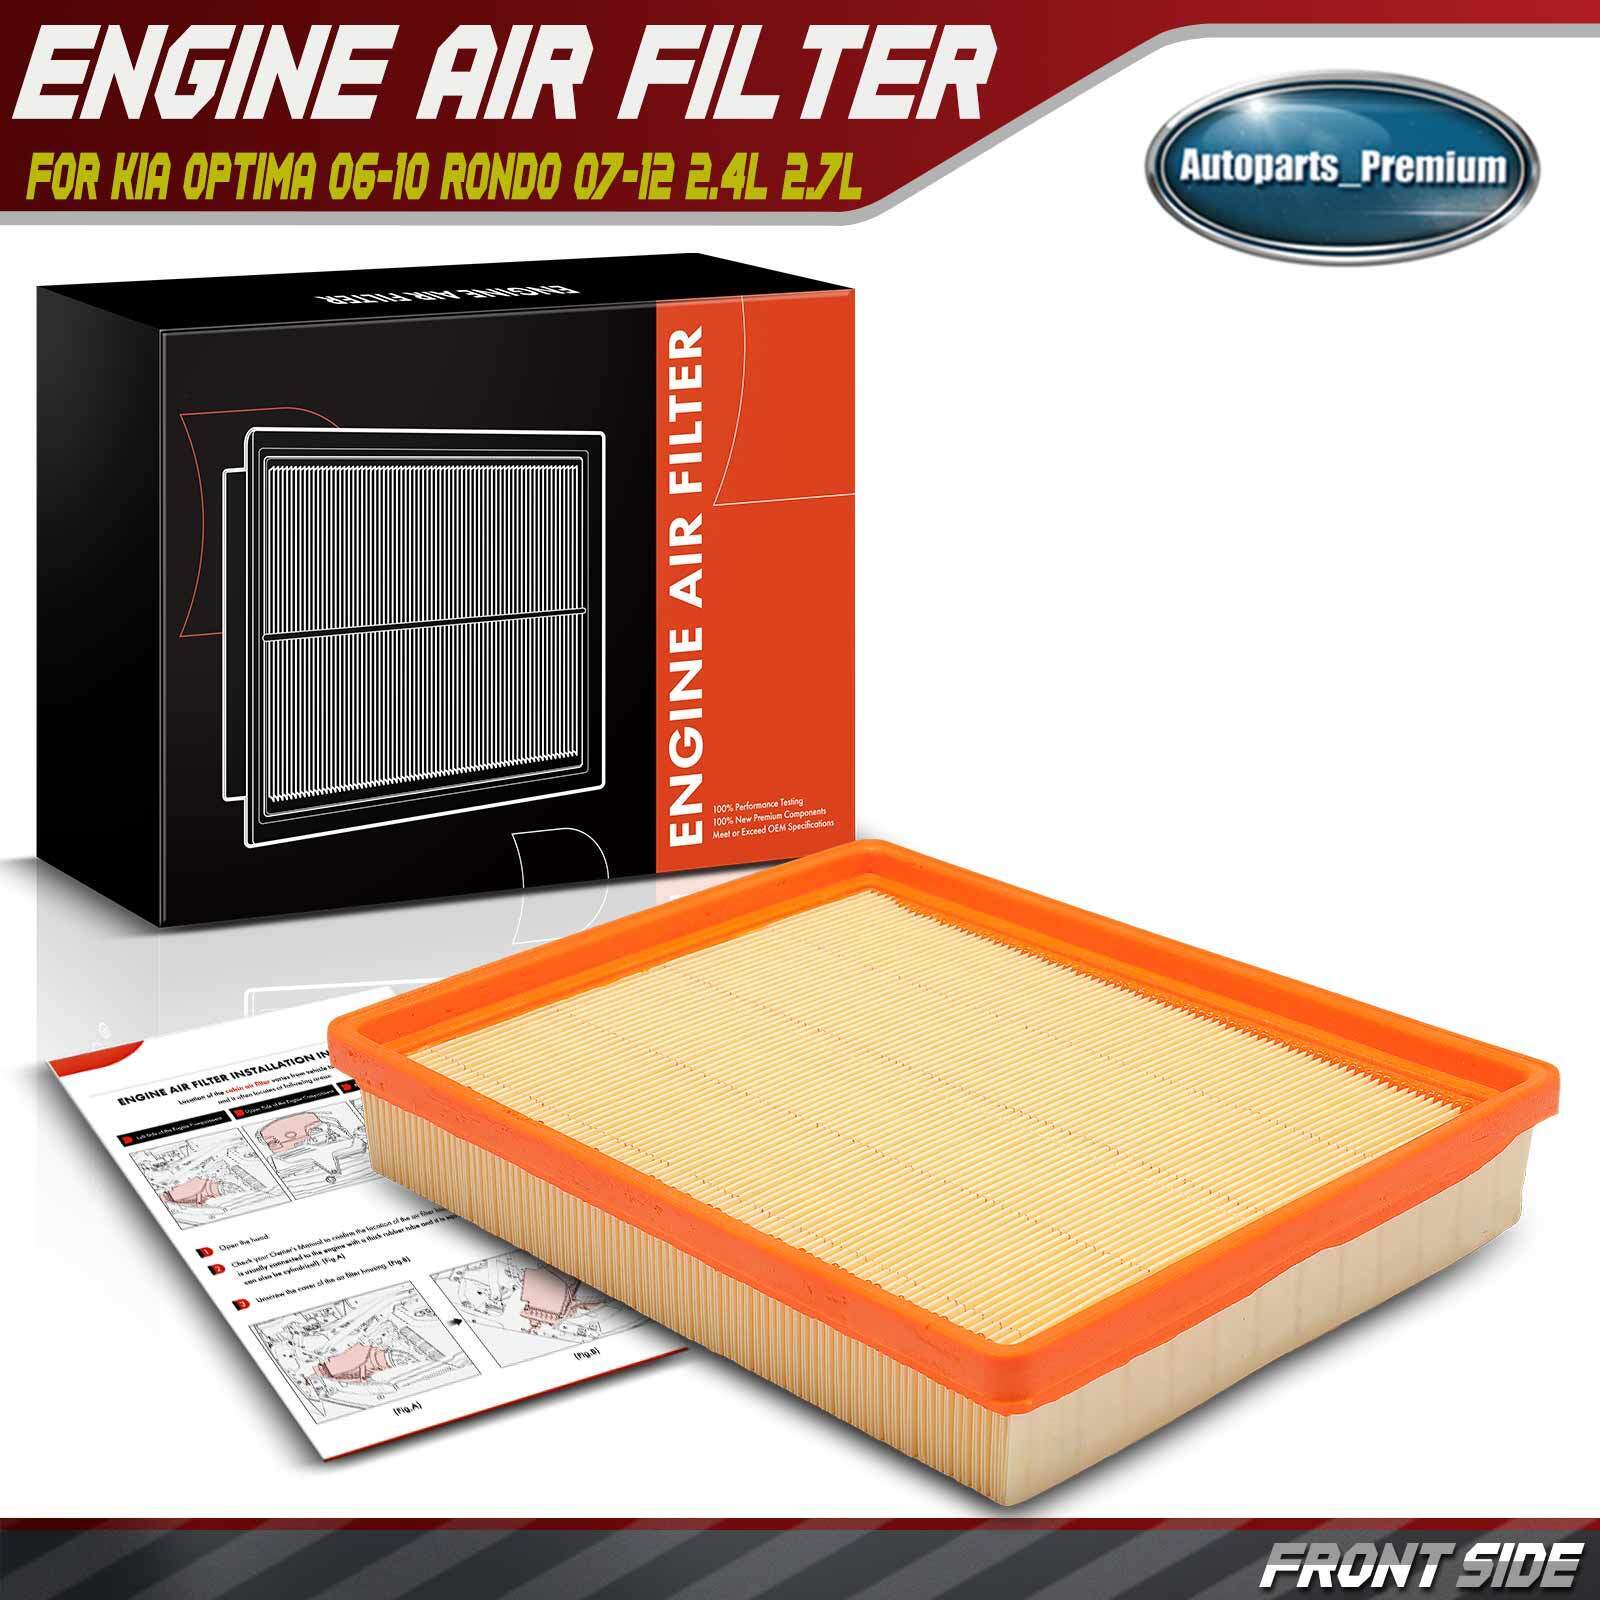 Engine Air Filter for Kia Optima 2006-2010 Rondo 2007 2008-2012 L4 2.4L V6 2.7L